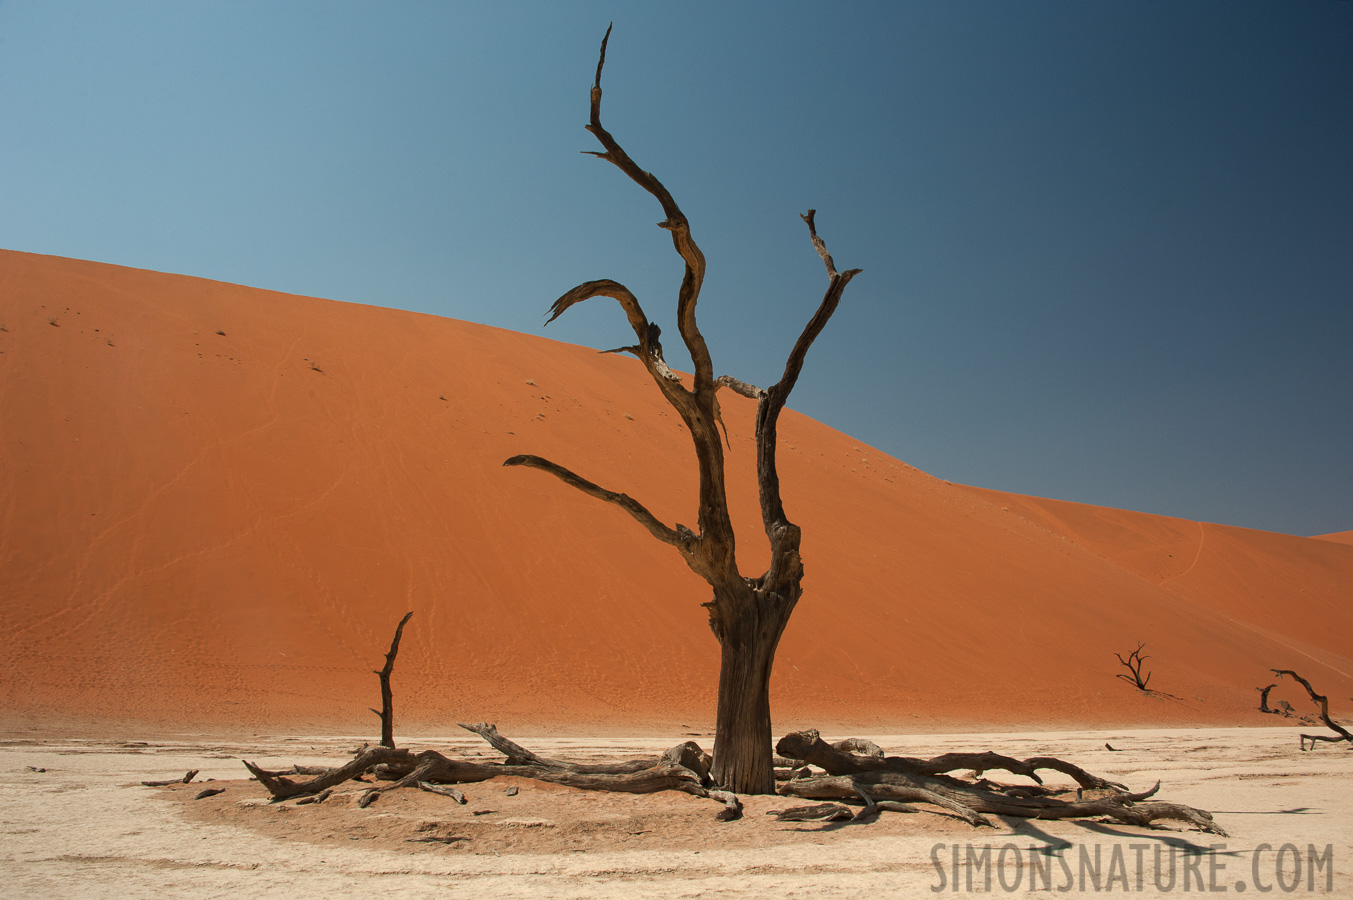 Namib-Naukluft National Park [28 mm, 1/250 sec at f / 13, ISO 400]